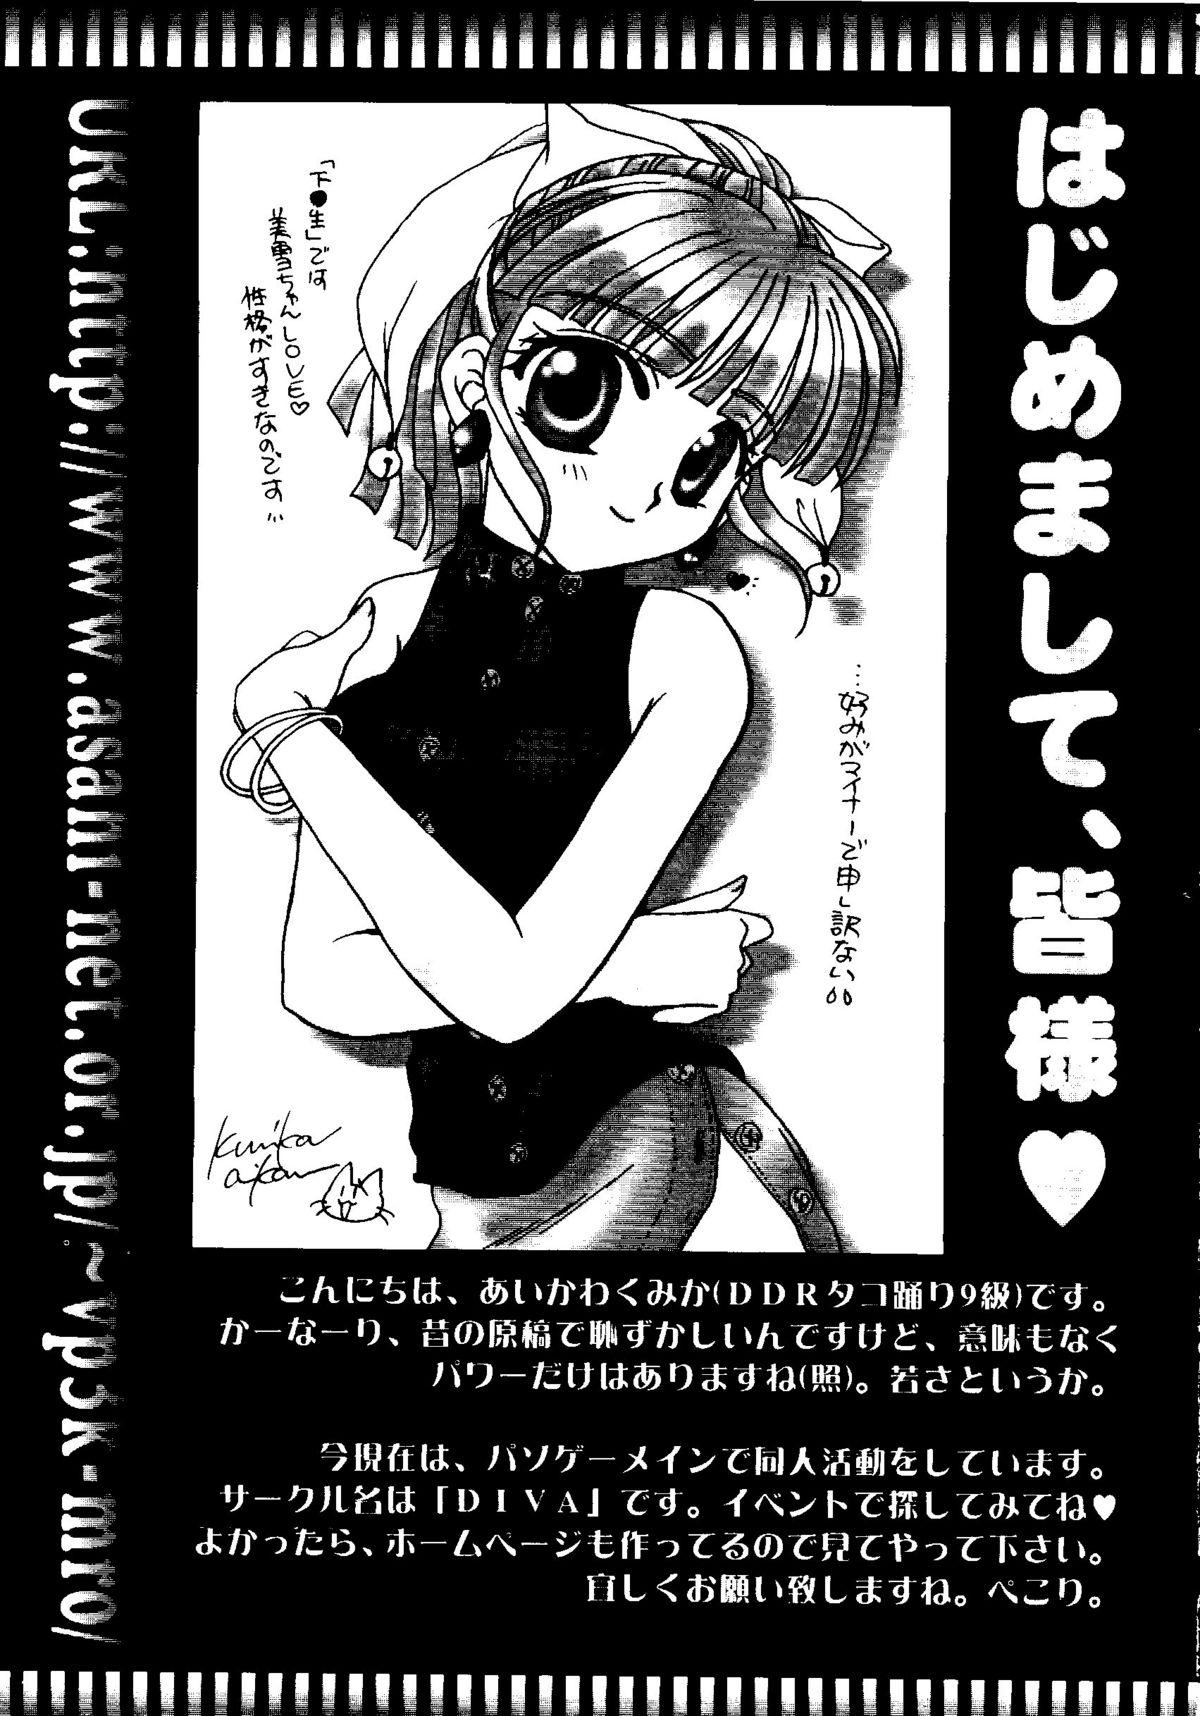 Bishoujo Doujinshi Anthology Cute 2 80